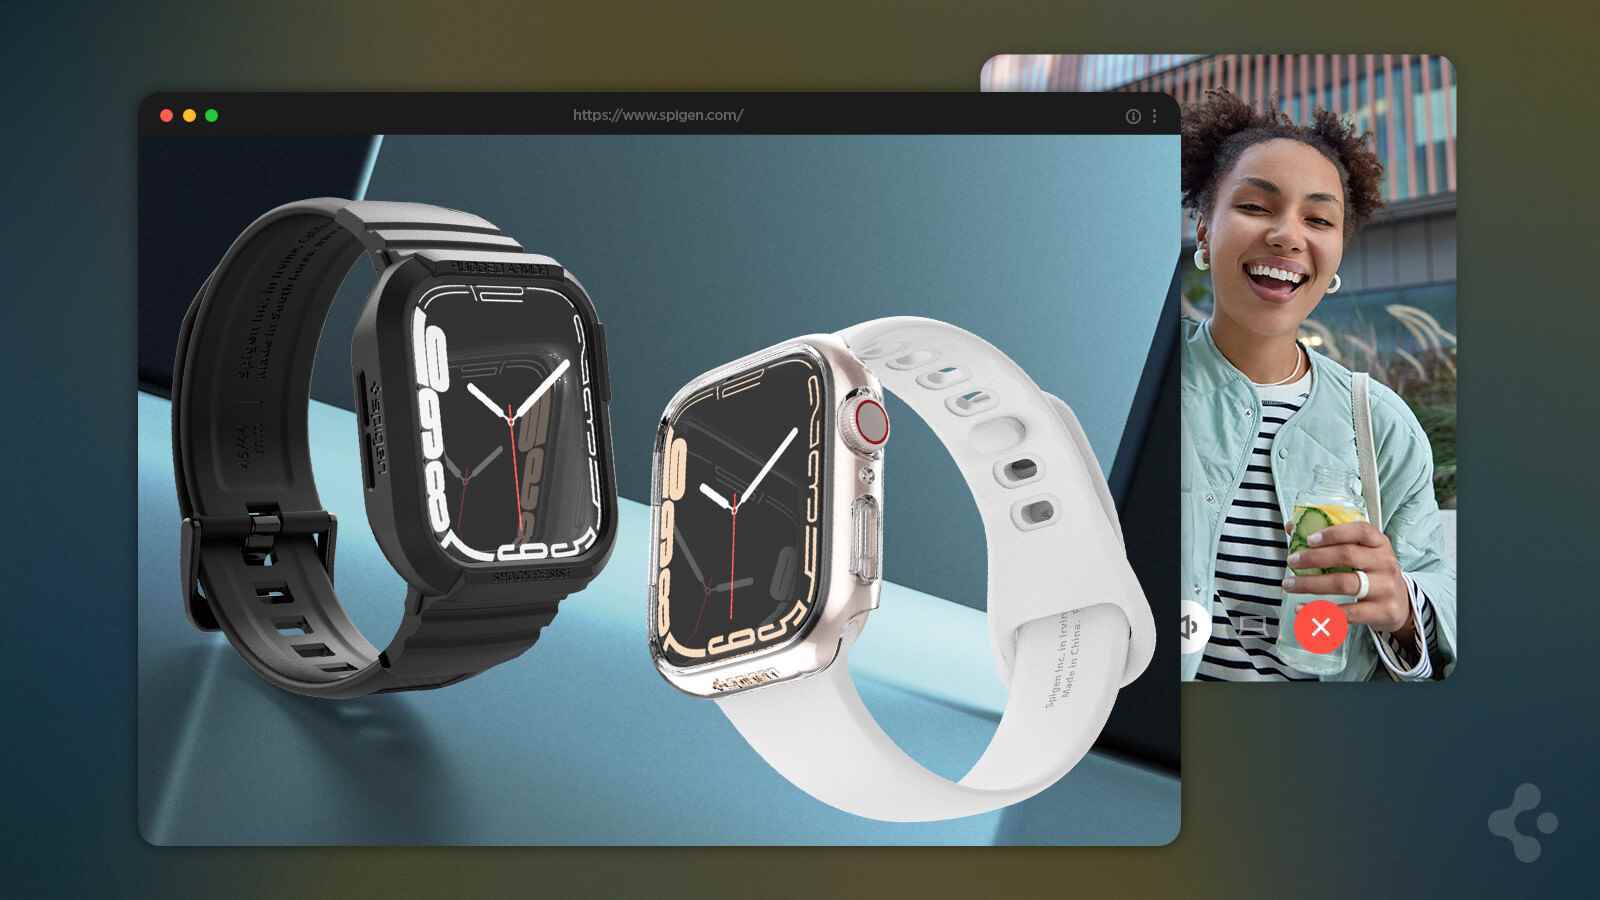 (Kaynak - Spigen) Apple Watch Aksesuarları - Apple Life'ınız için en iyi aksesuarlar: Spigen'in kılıfları, standları ve pilleri